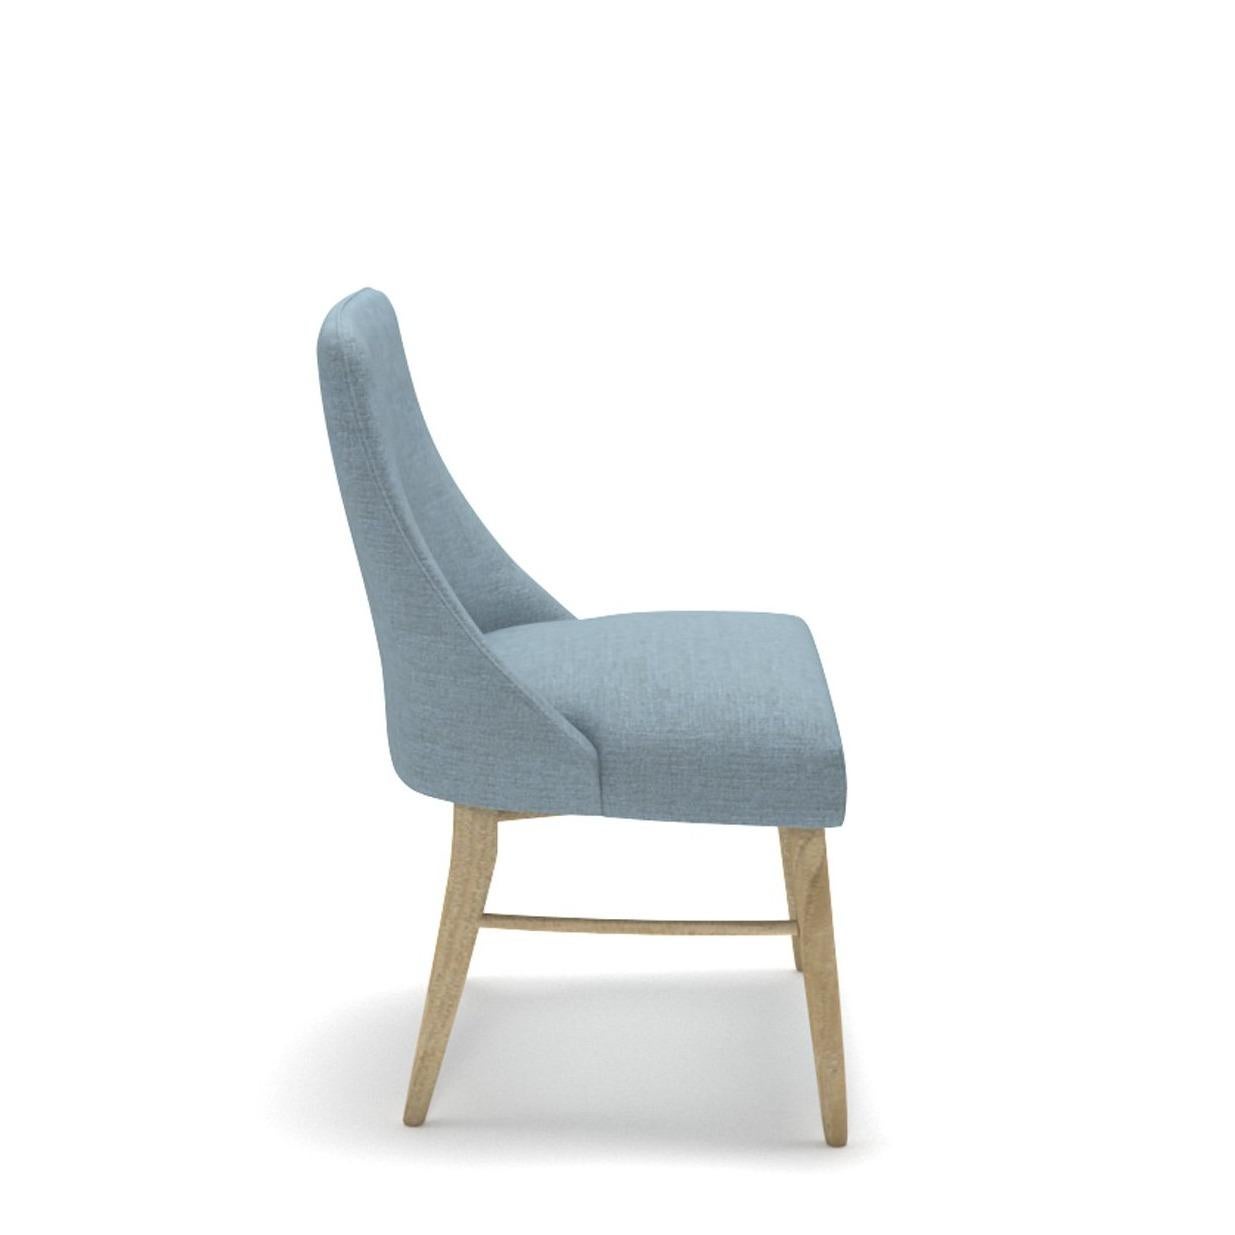 Sitzen Sie bequem mit Chair-02, gefertigt aus massivem Eichenholz für dauerhaften Komfort und Stärke. In diesem Sessel, der sich perfekt für jedes Wohnzimmer eignet, werden Sie höchsten Komfort erleben.

Alle Tektōn-Stücke sind aus natürlichem